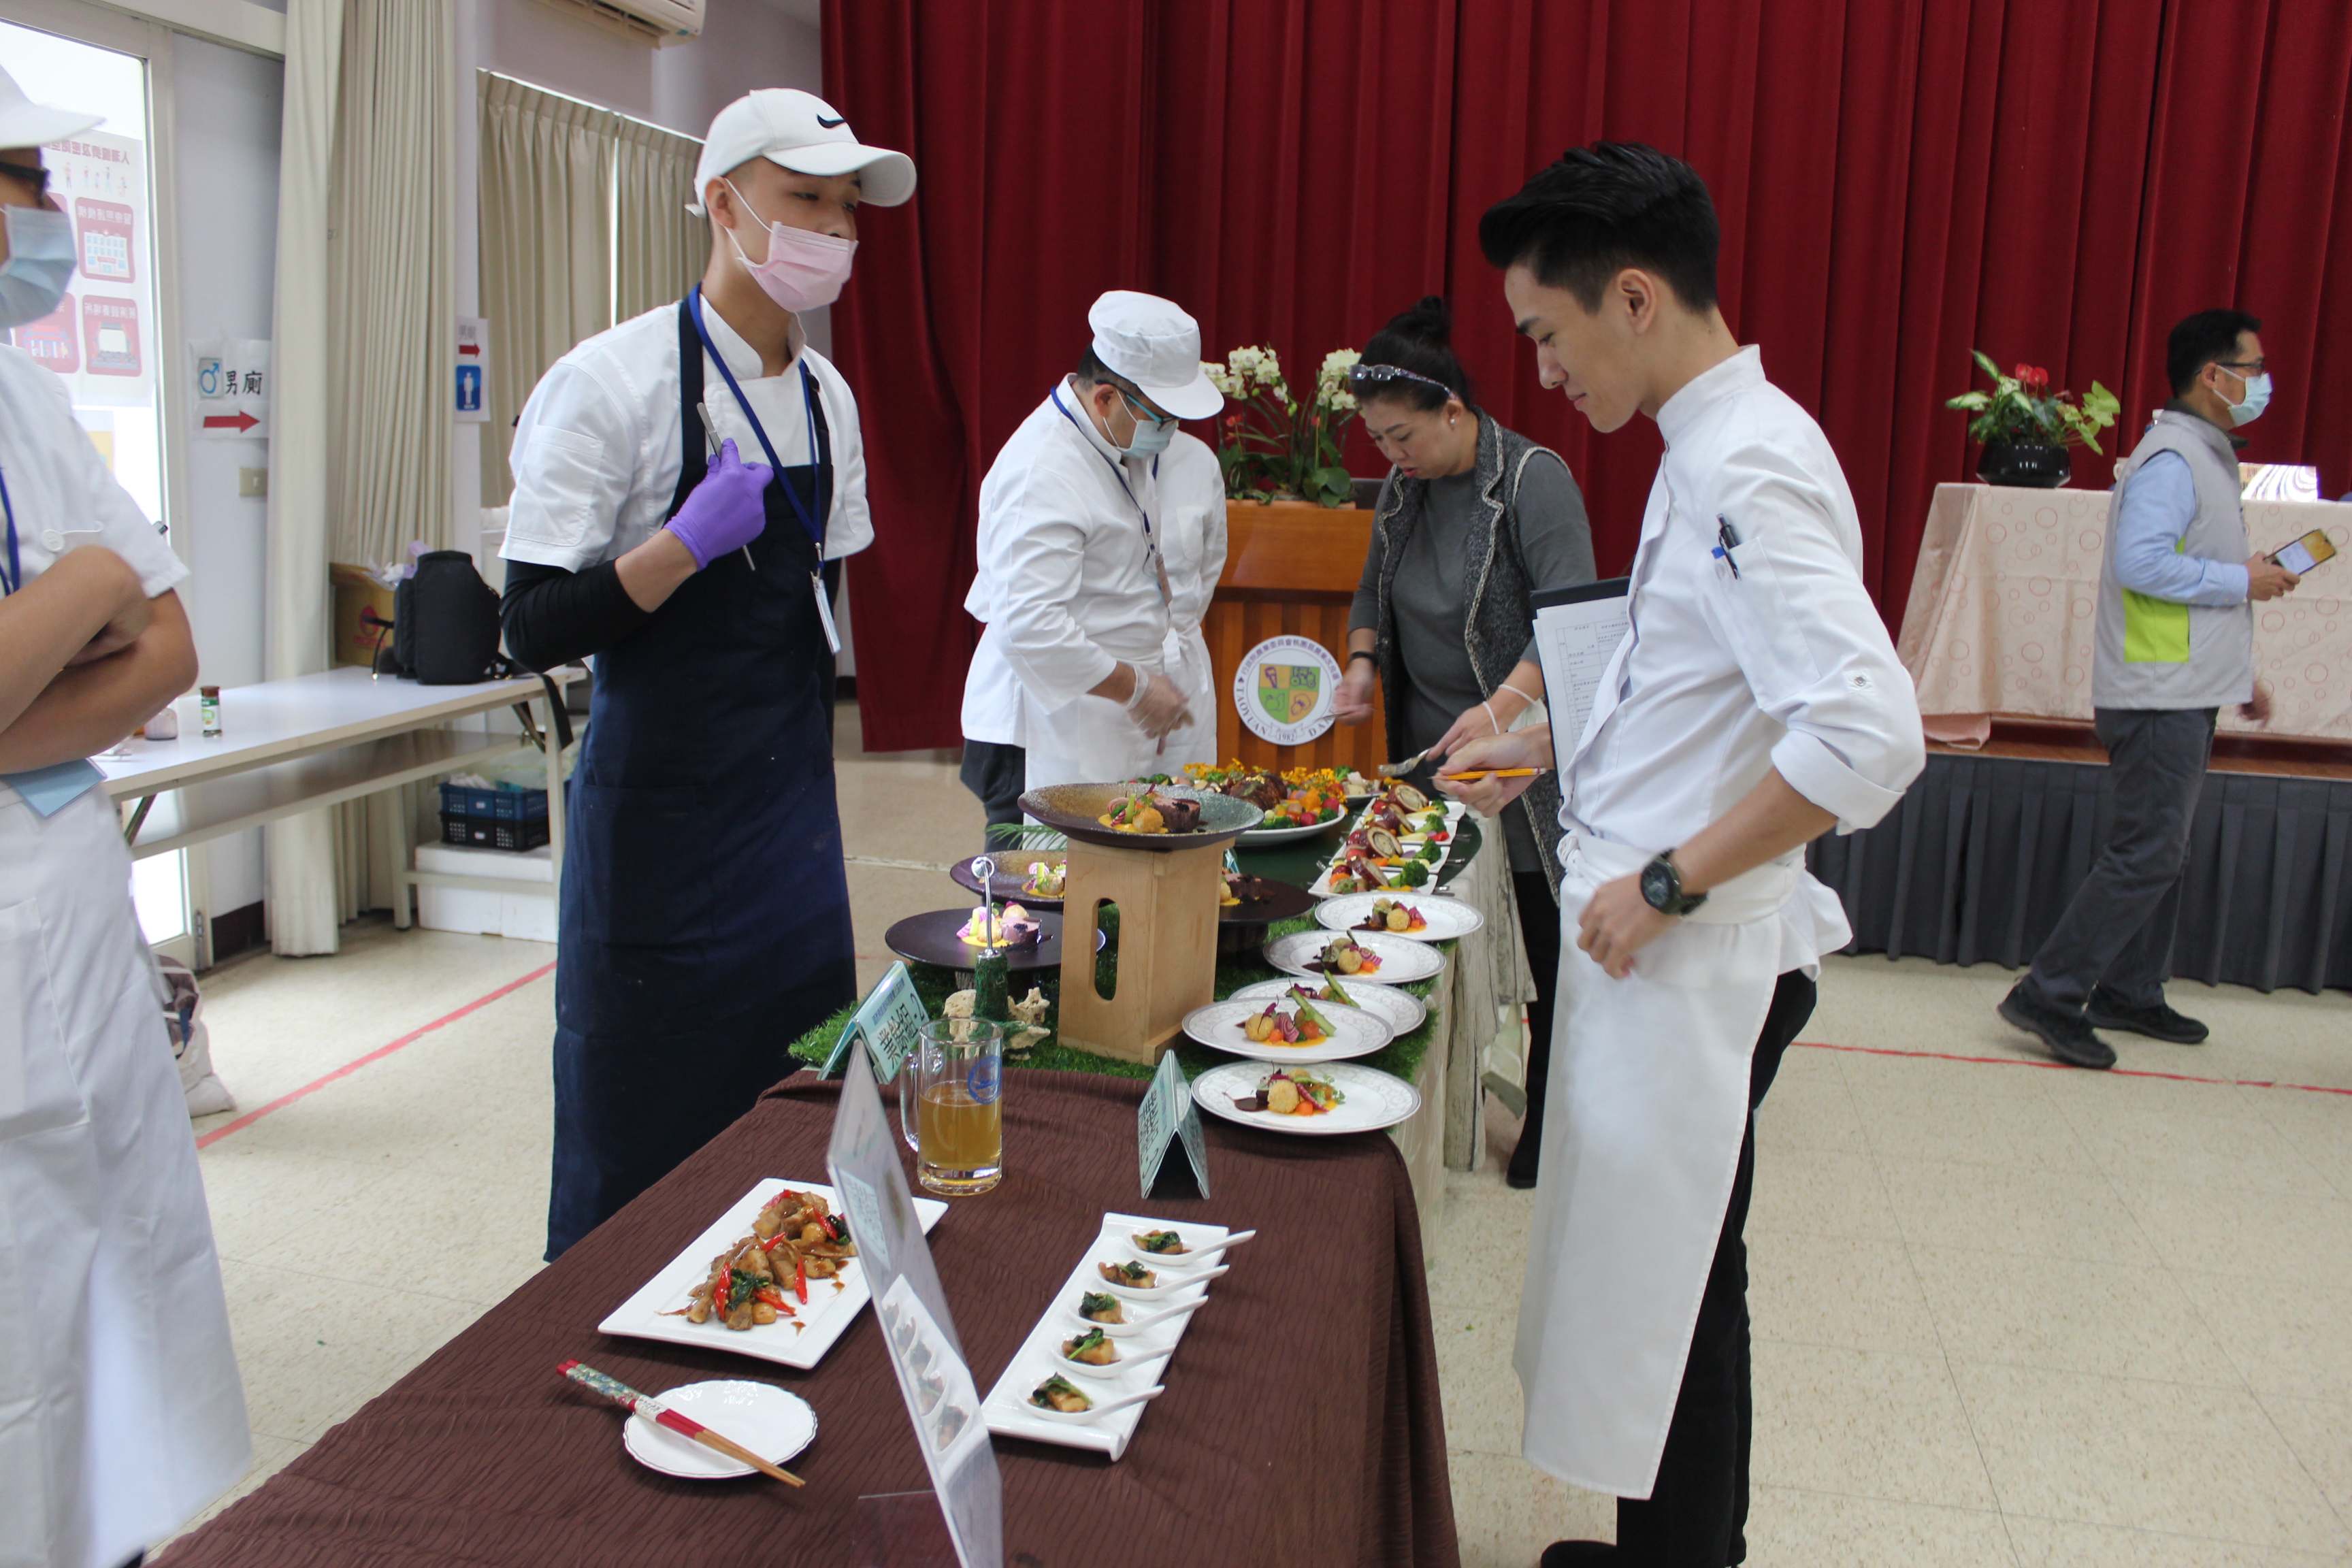 北區初賽時評審蔡季芳老師(右3)及陳佑昇老師(右2)正細細品嘗參賽料理。